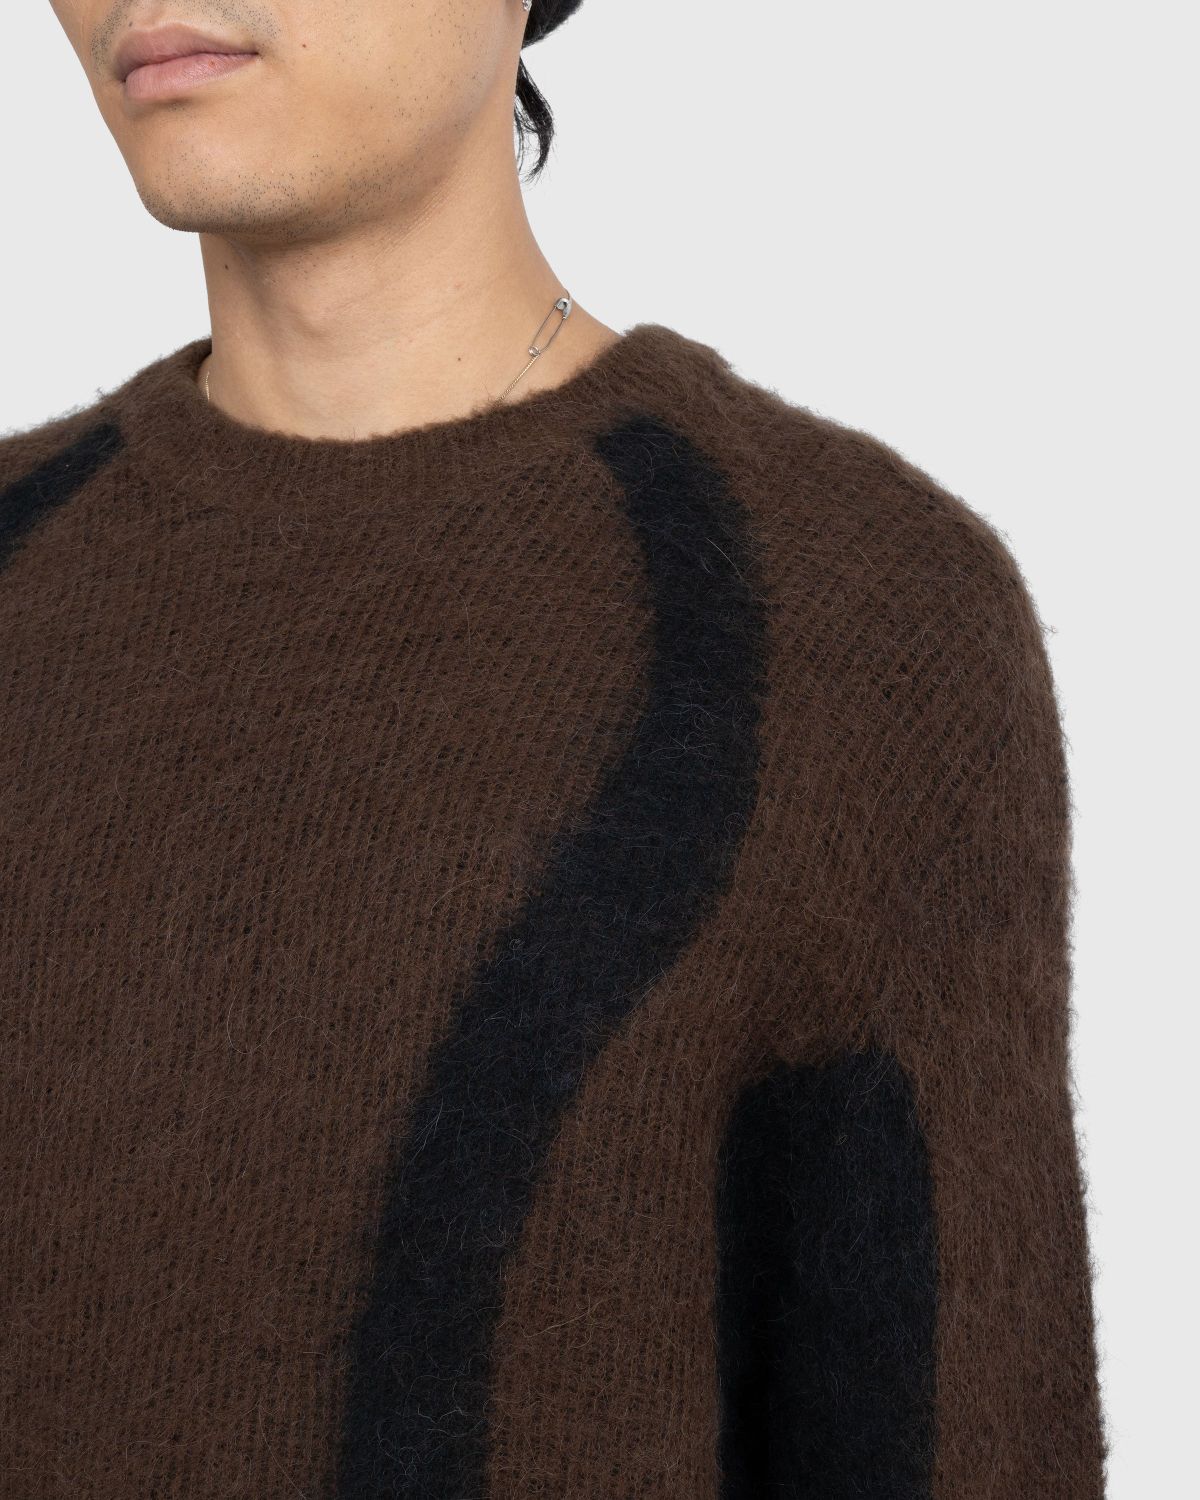 _J.L-A.L_ – Liquid Alpaca Sweater Black | Highsnobiety Shop